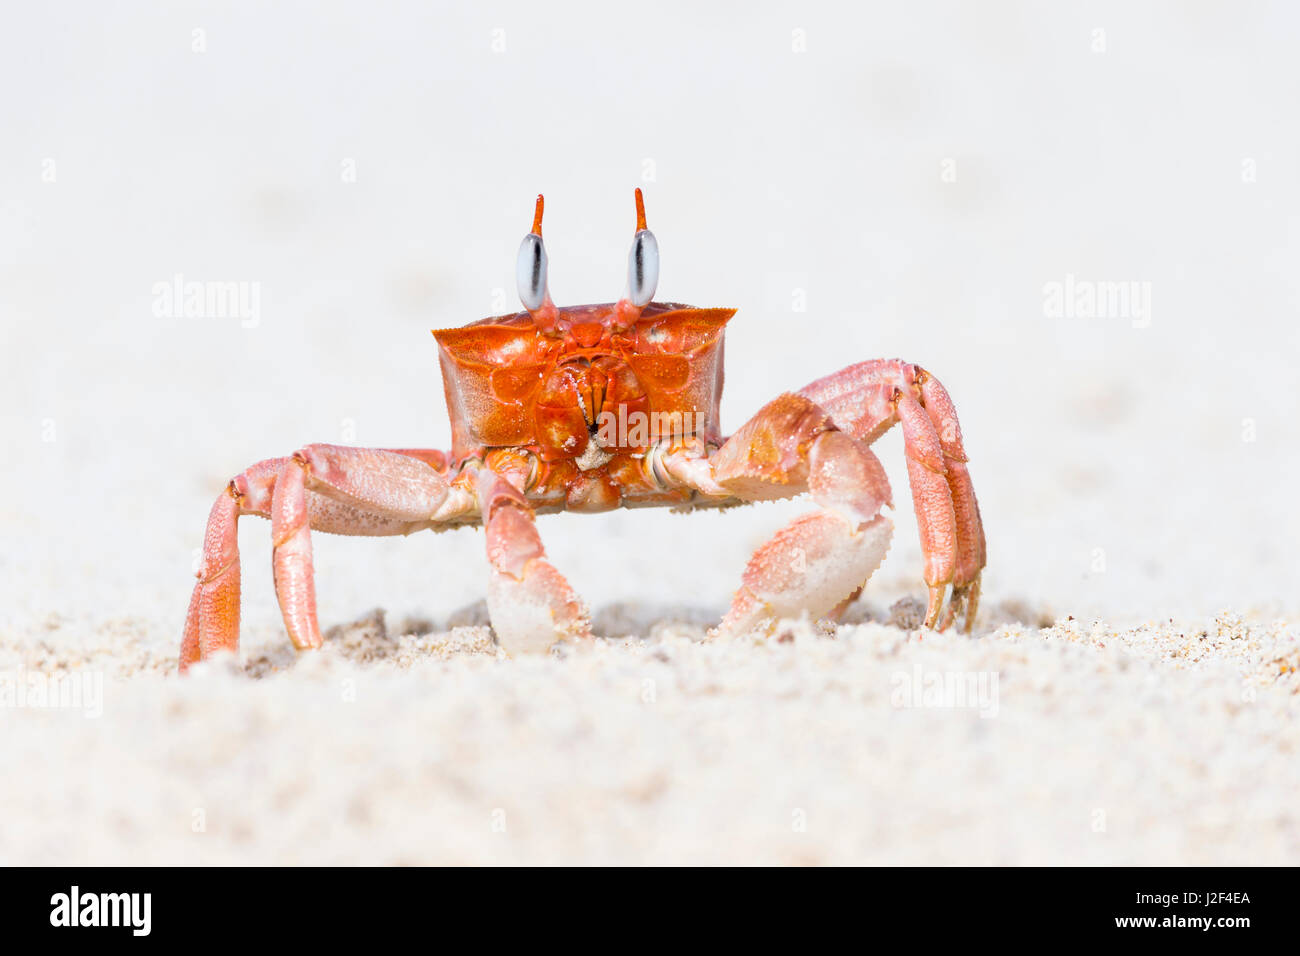 Ecuador, Galapagos Islands, San Cristobal, Cerro Brujo, ghost crab, (Ocypode gaudichaudii). Ghost crab portrait. Stock Photo